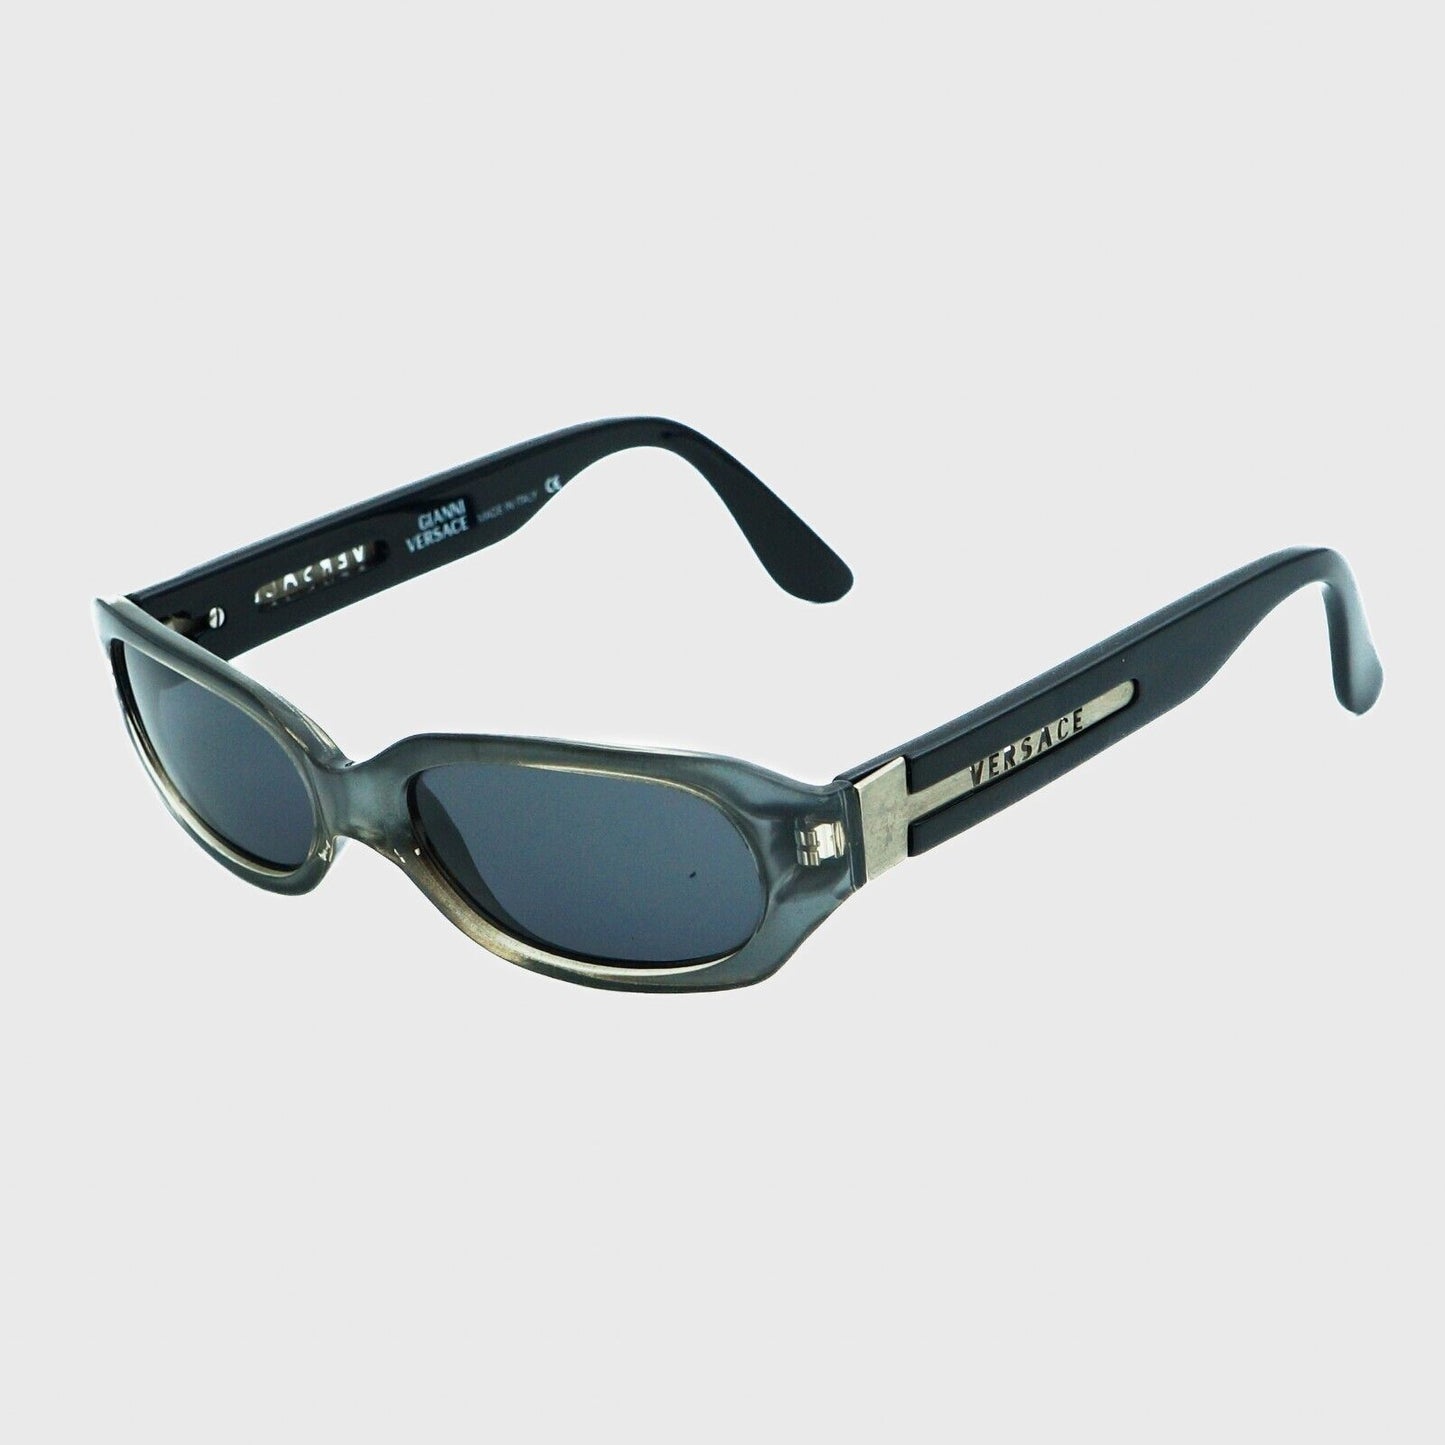 GIANNI VERSACE MOD 531A Black Sunglasses Vintage 80s 90s